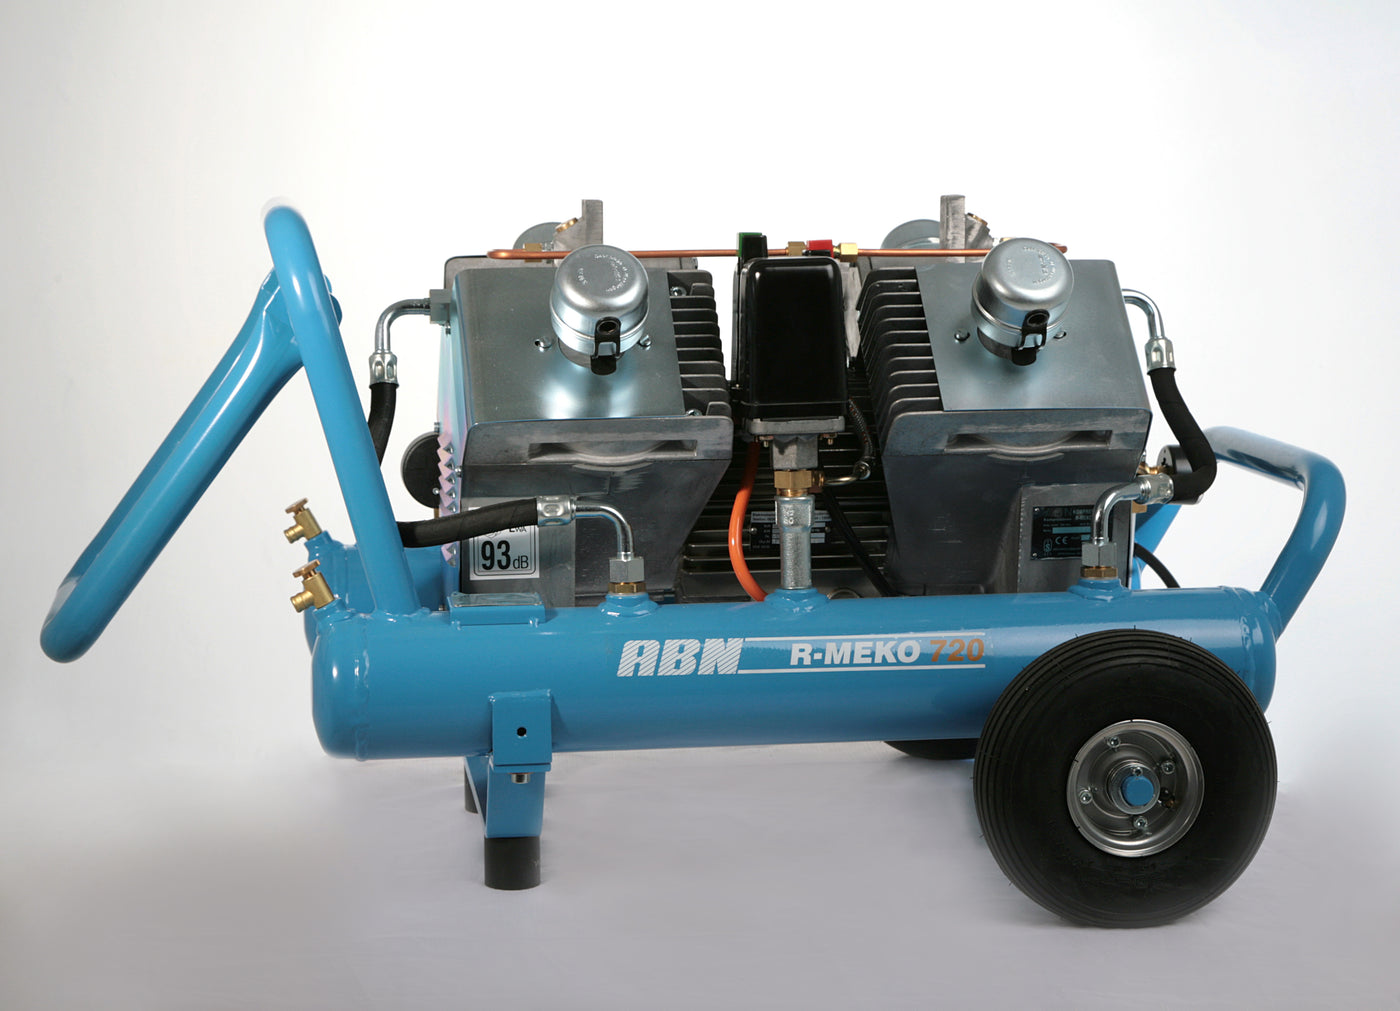 R-Meko 720 Compressor